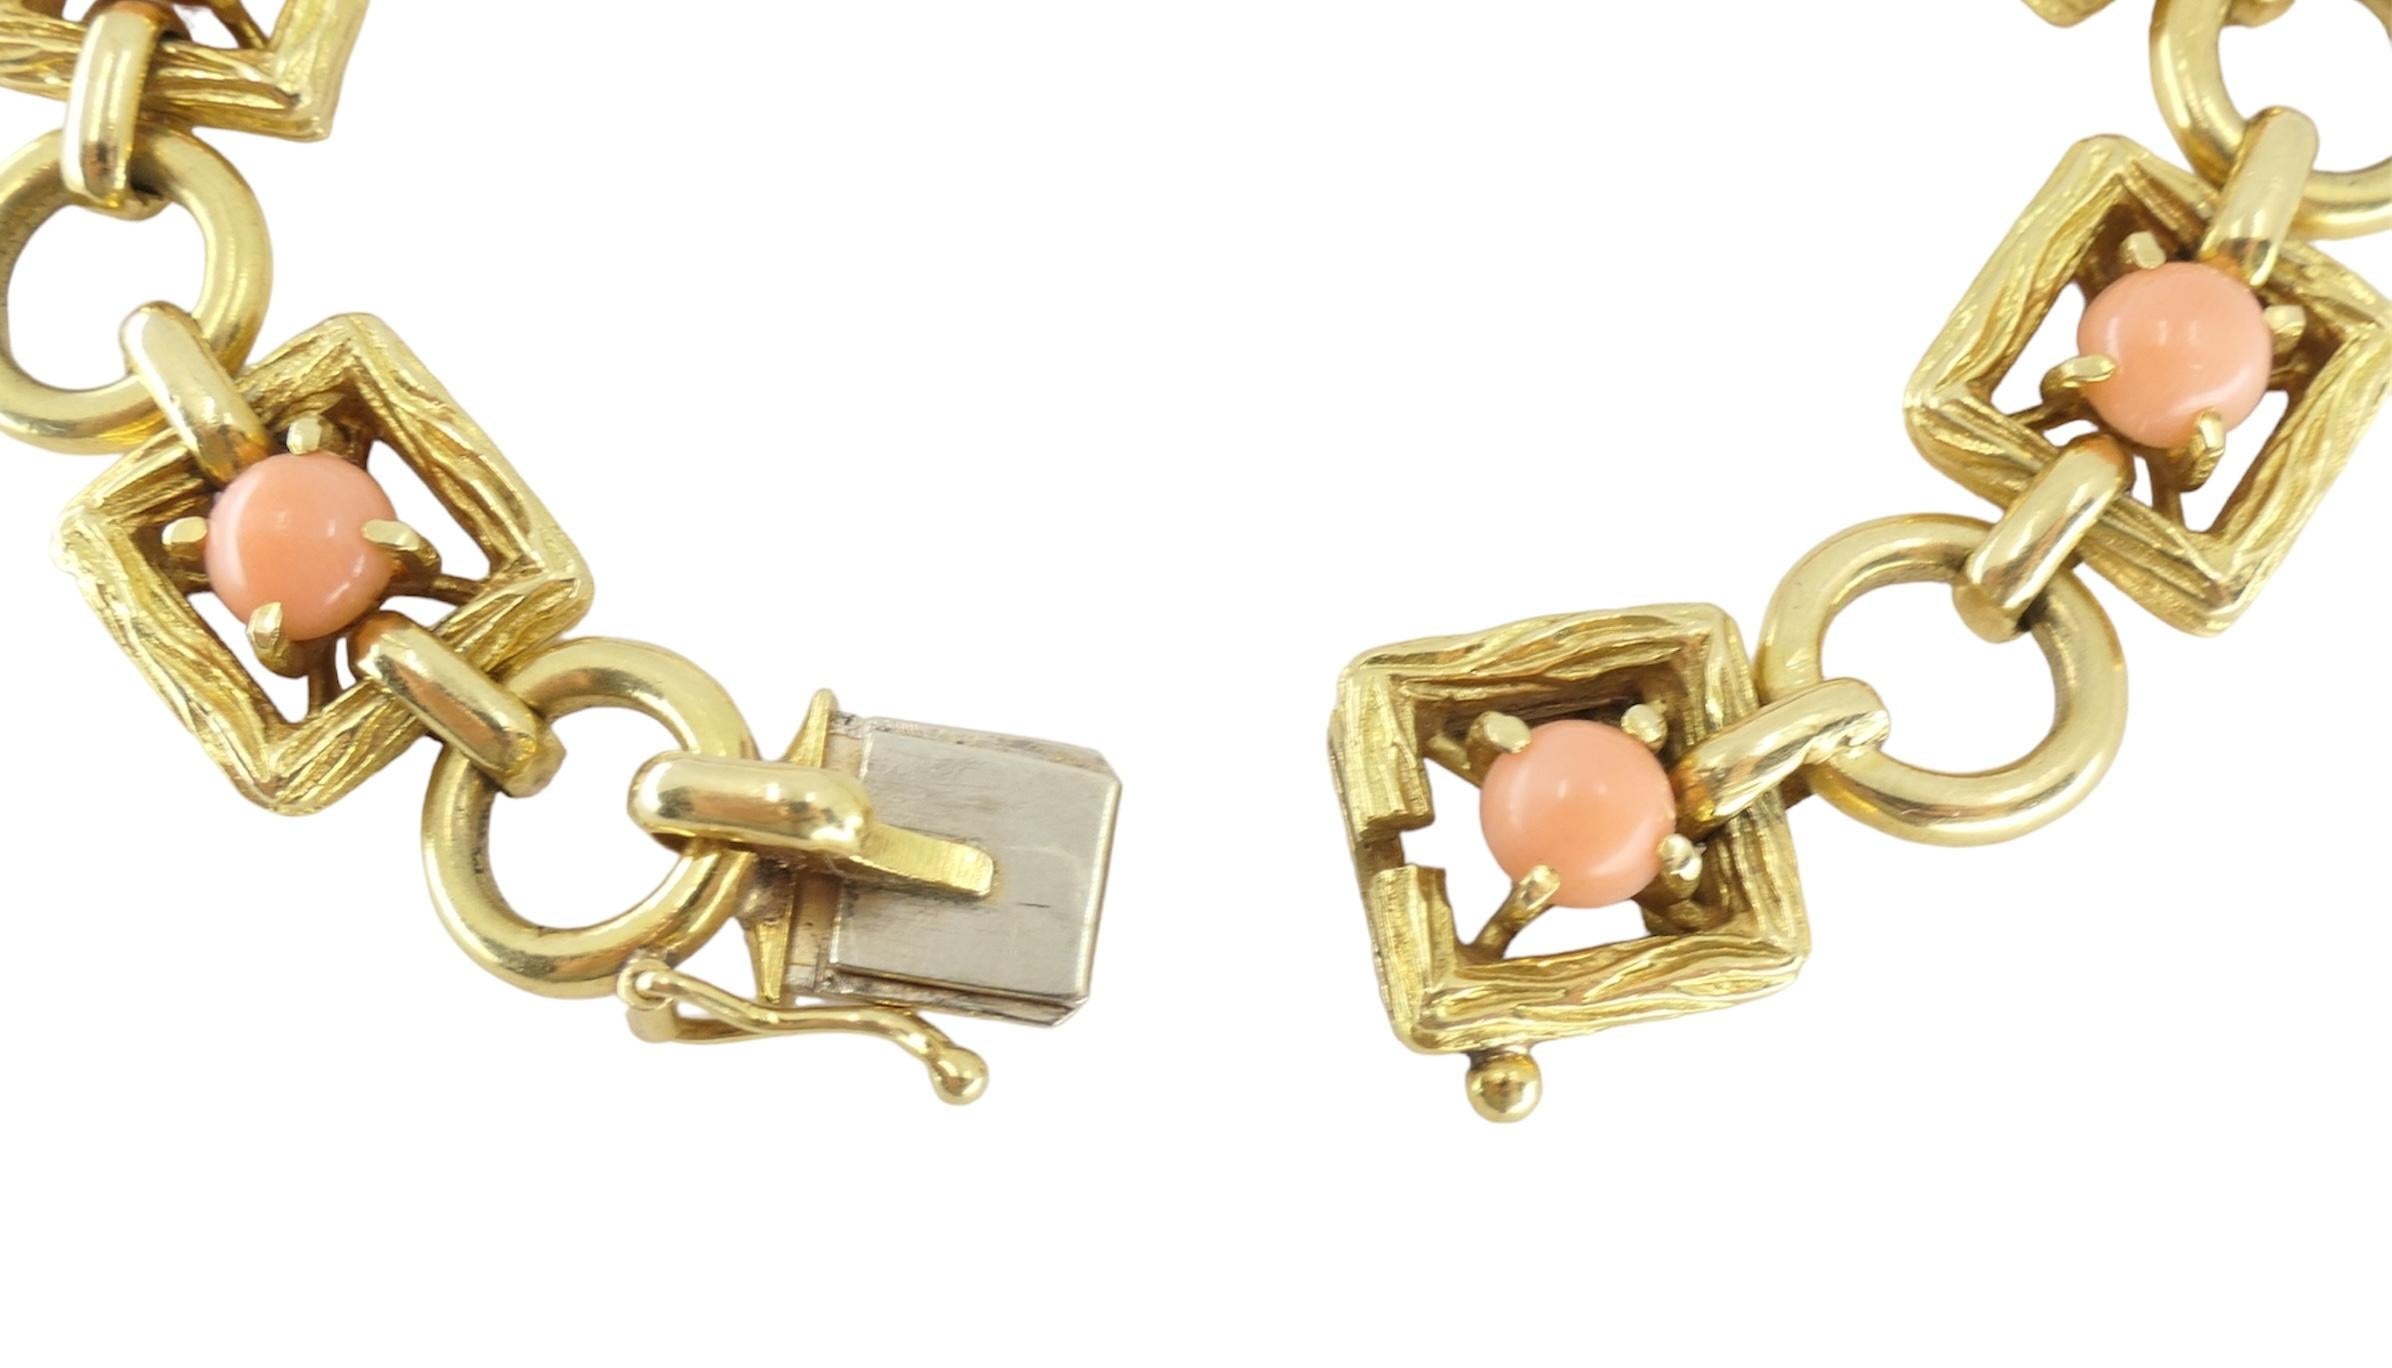 Wir präsentieren ein zeitloses Stück: das Tiffany & Co. 18k Hammered Gold Coral Link Bracelet. Dieses exquisite Armband wurde in den 1970er Jahren gefertigt und besticht durch Eleganz und Raffinesse. Mit einer Länge von 6,5 Inch und einer Breite von